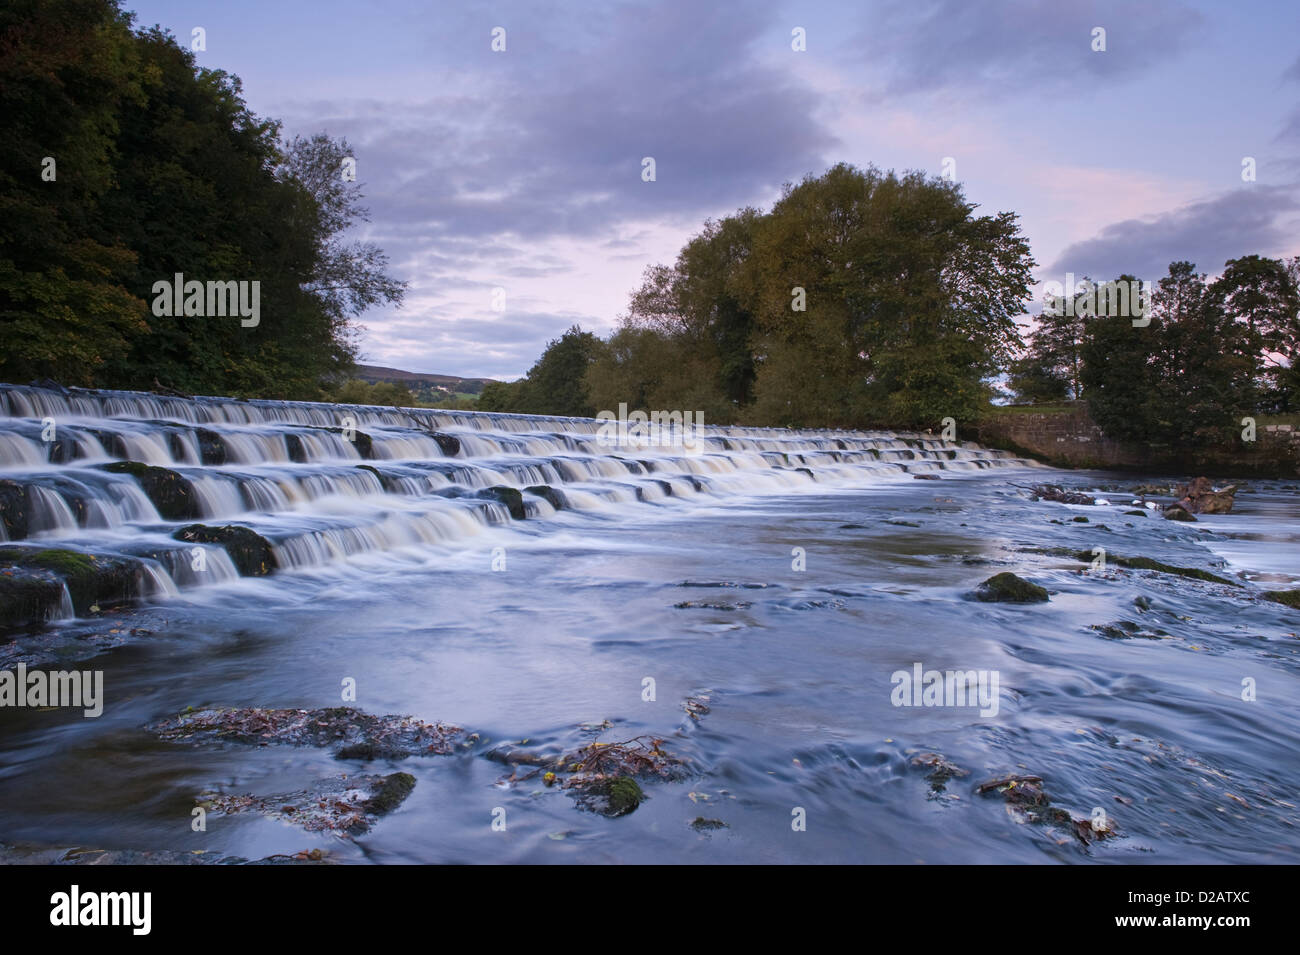 Scenic, soir, paysage rural de l'écoulement de l'eau et tumbling Weir & bas sur la rivière Wharfe - étapes, Burley dans Wharfedale, Yorkshire, Angleterre, Royaume-Uni. Banque D'Images